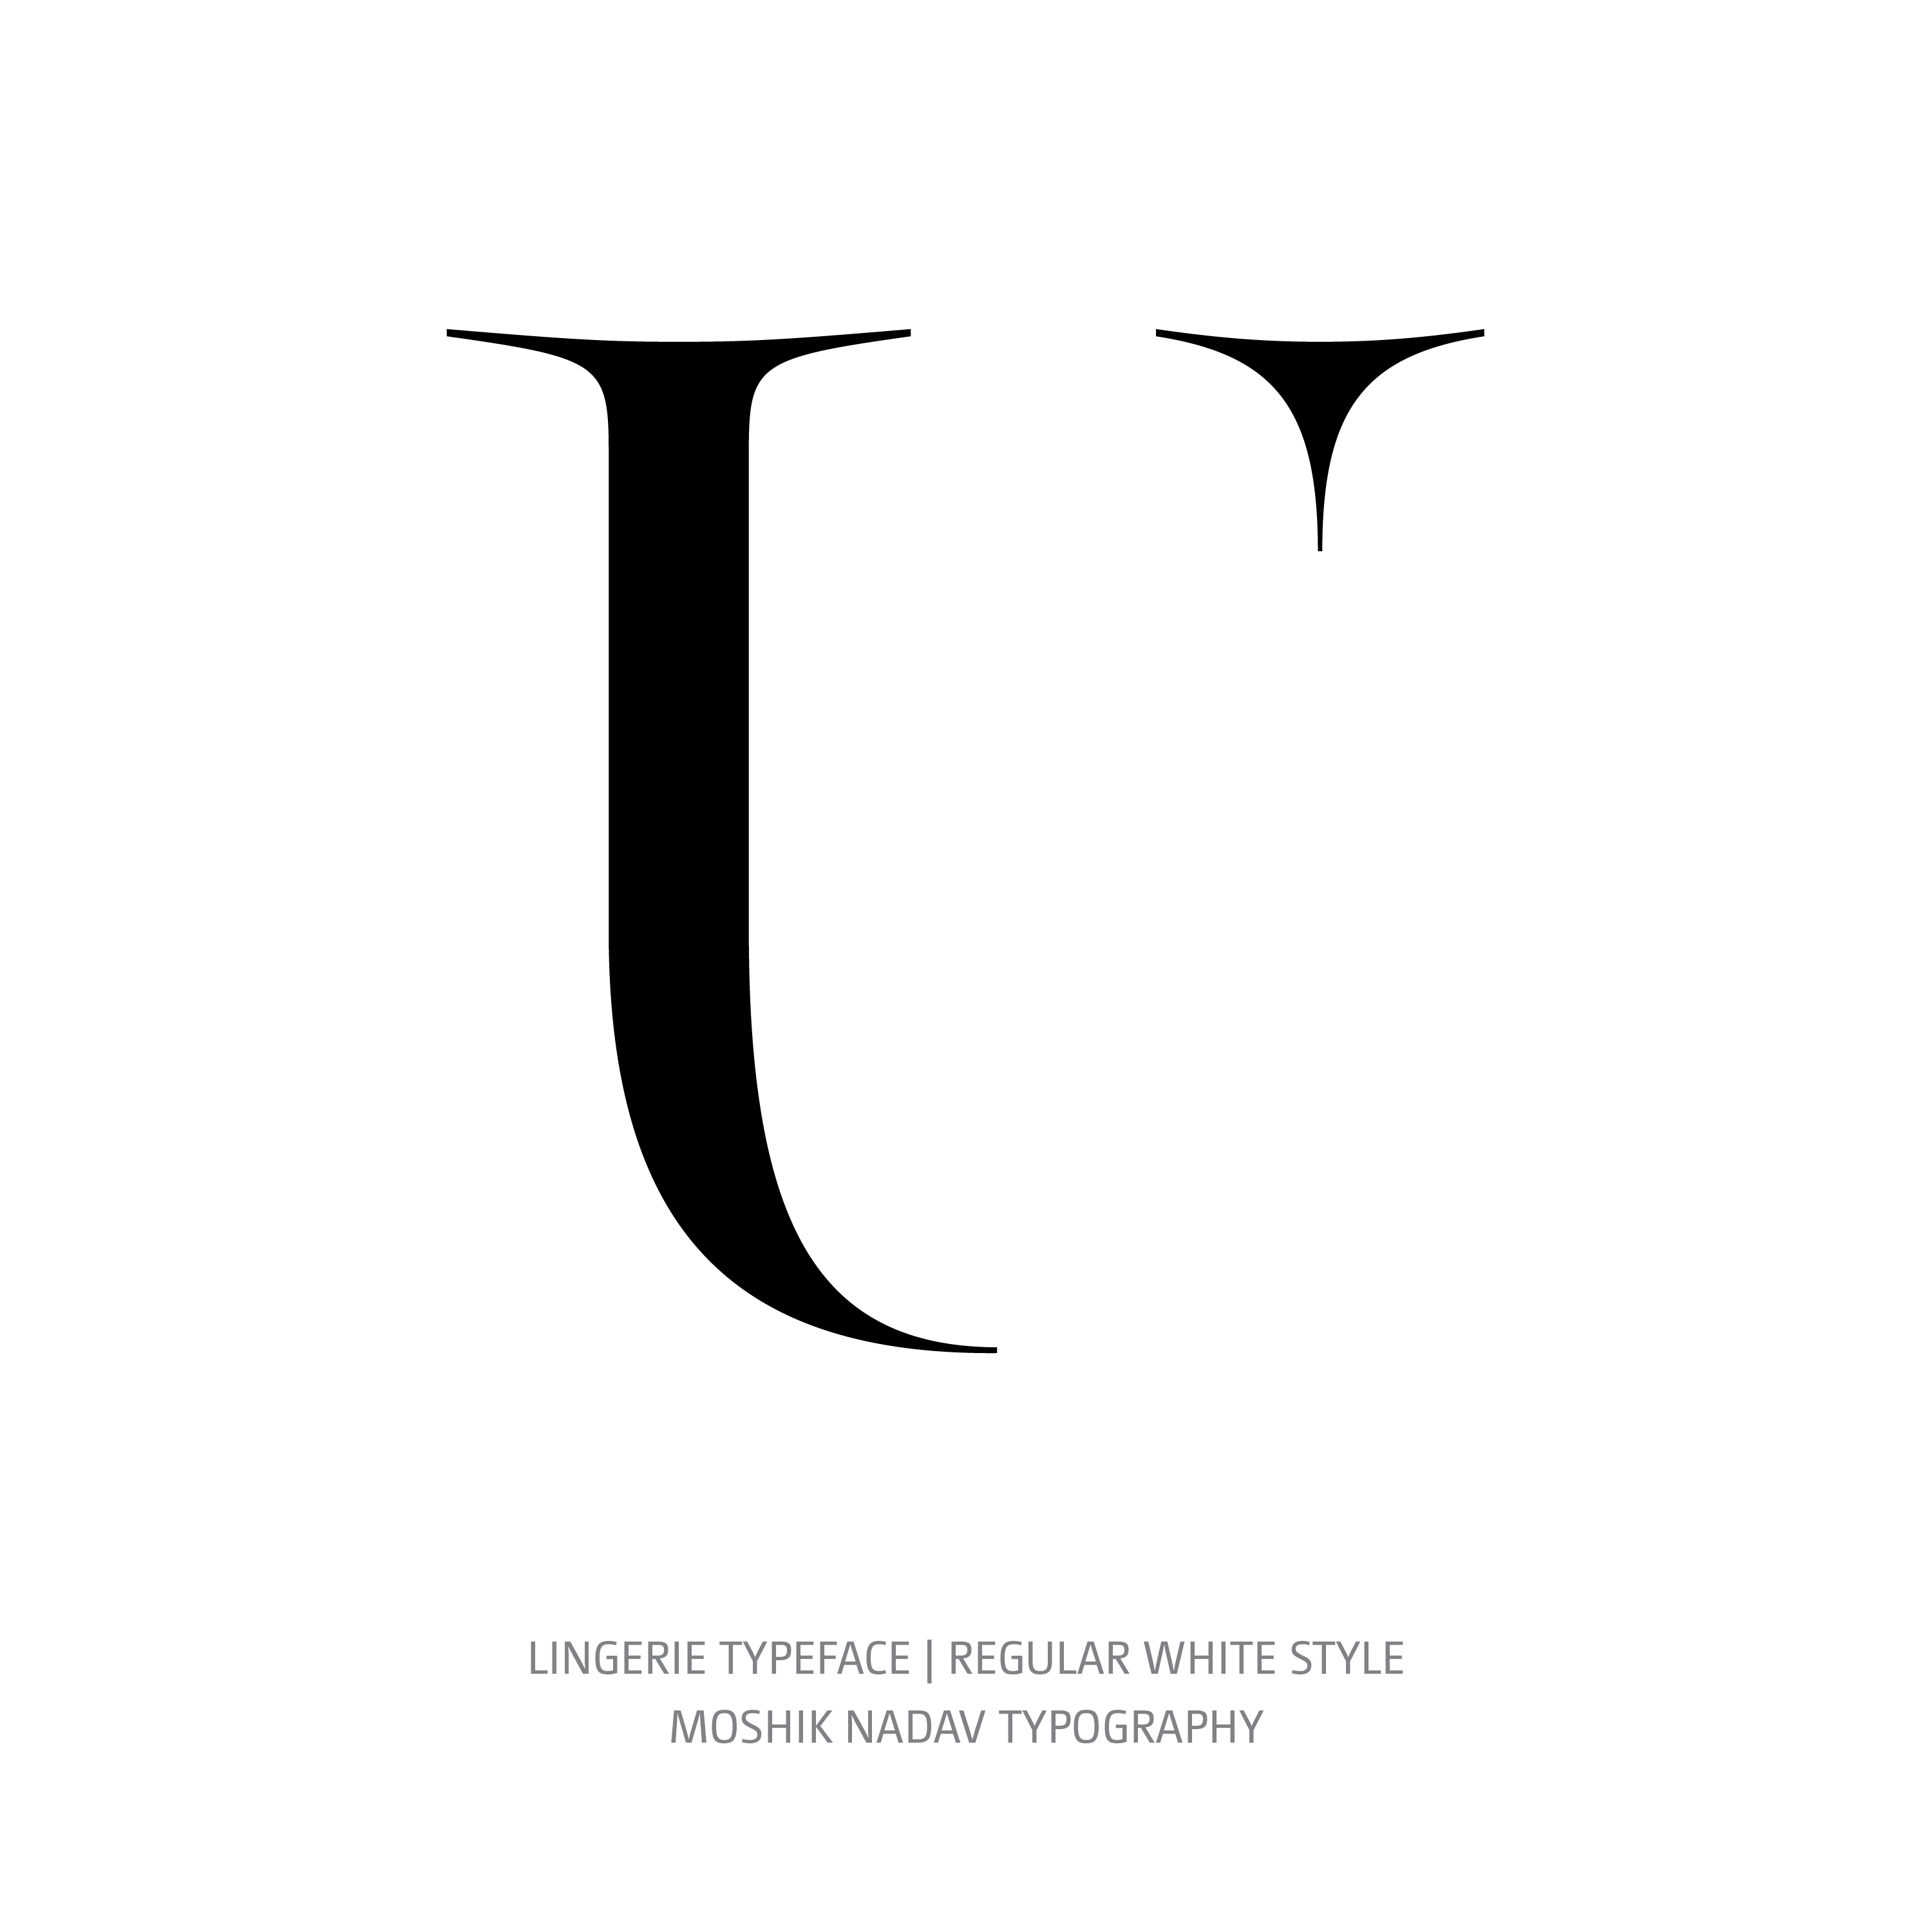 Lingerie Typeface Regular White U